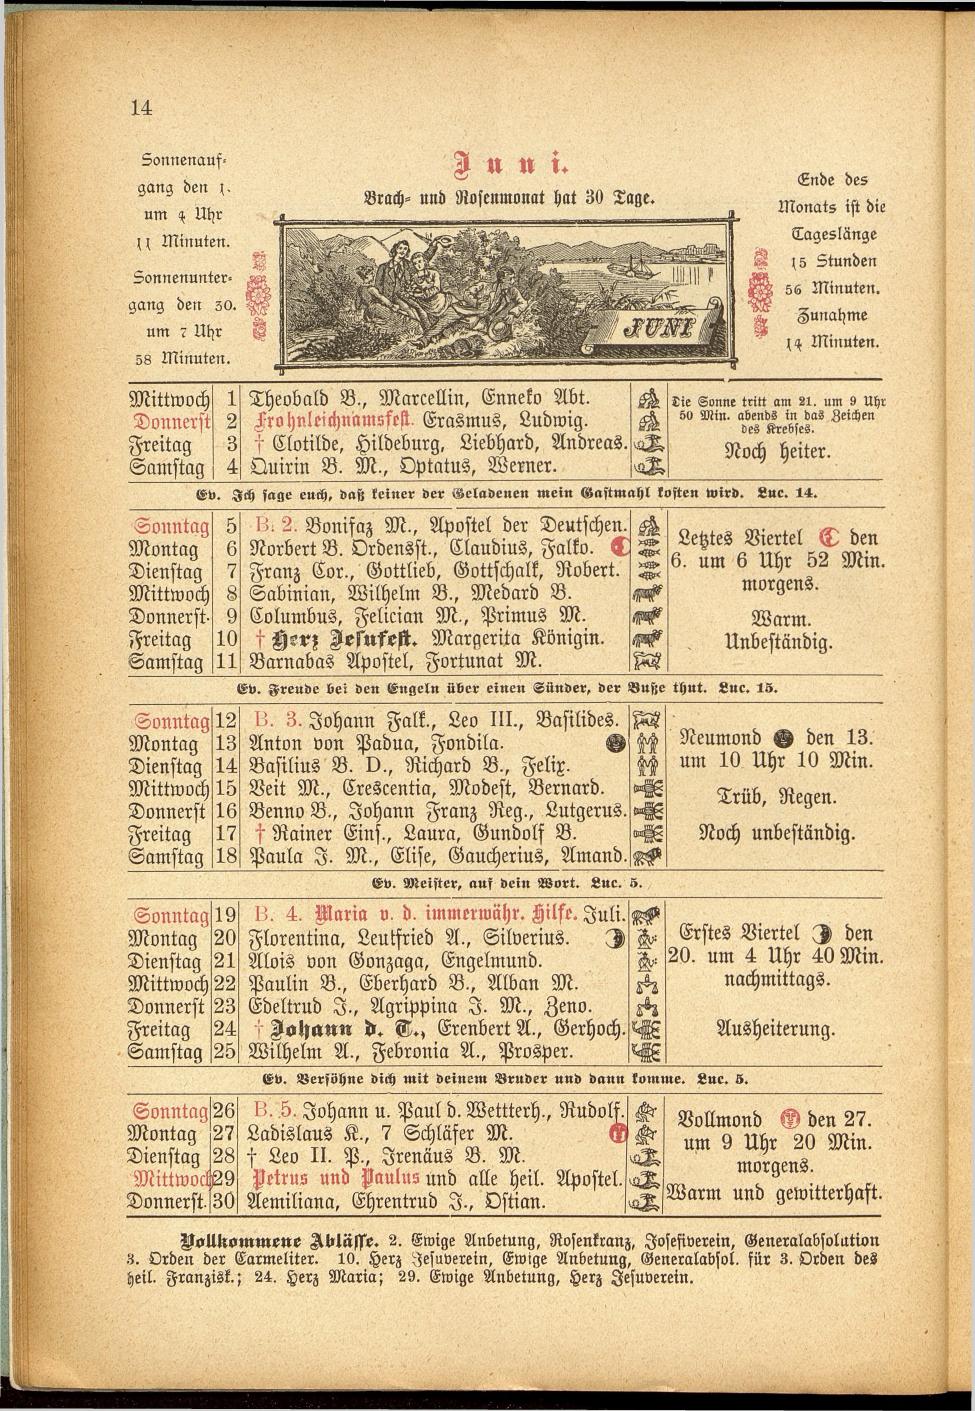 Illustrierter Braunauer-Kalender für das Jahr 1904 - Seite 18